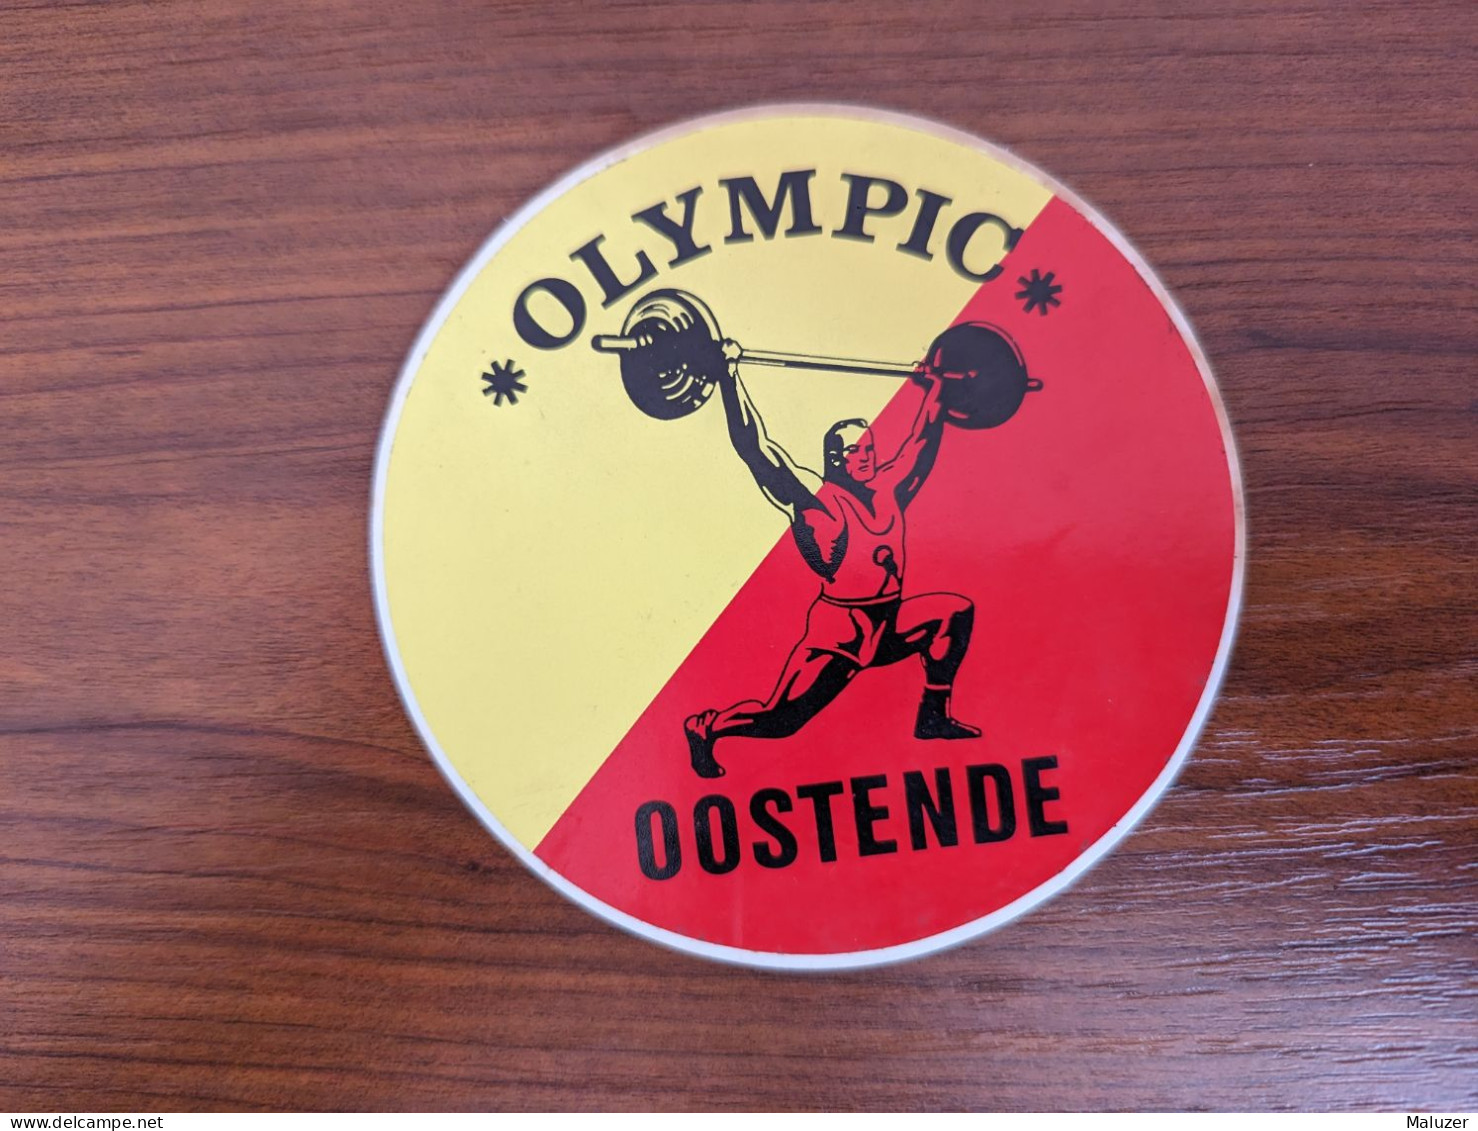 AUTOCOLLANT OLYMPIC - FITNESS BODYBUILDING HALTEROPHILIE SPORT – OOSTENDE OSTENDE -BELGIQUE BELGIË BELGIUM - Stickers